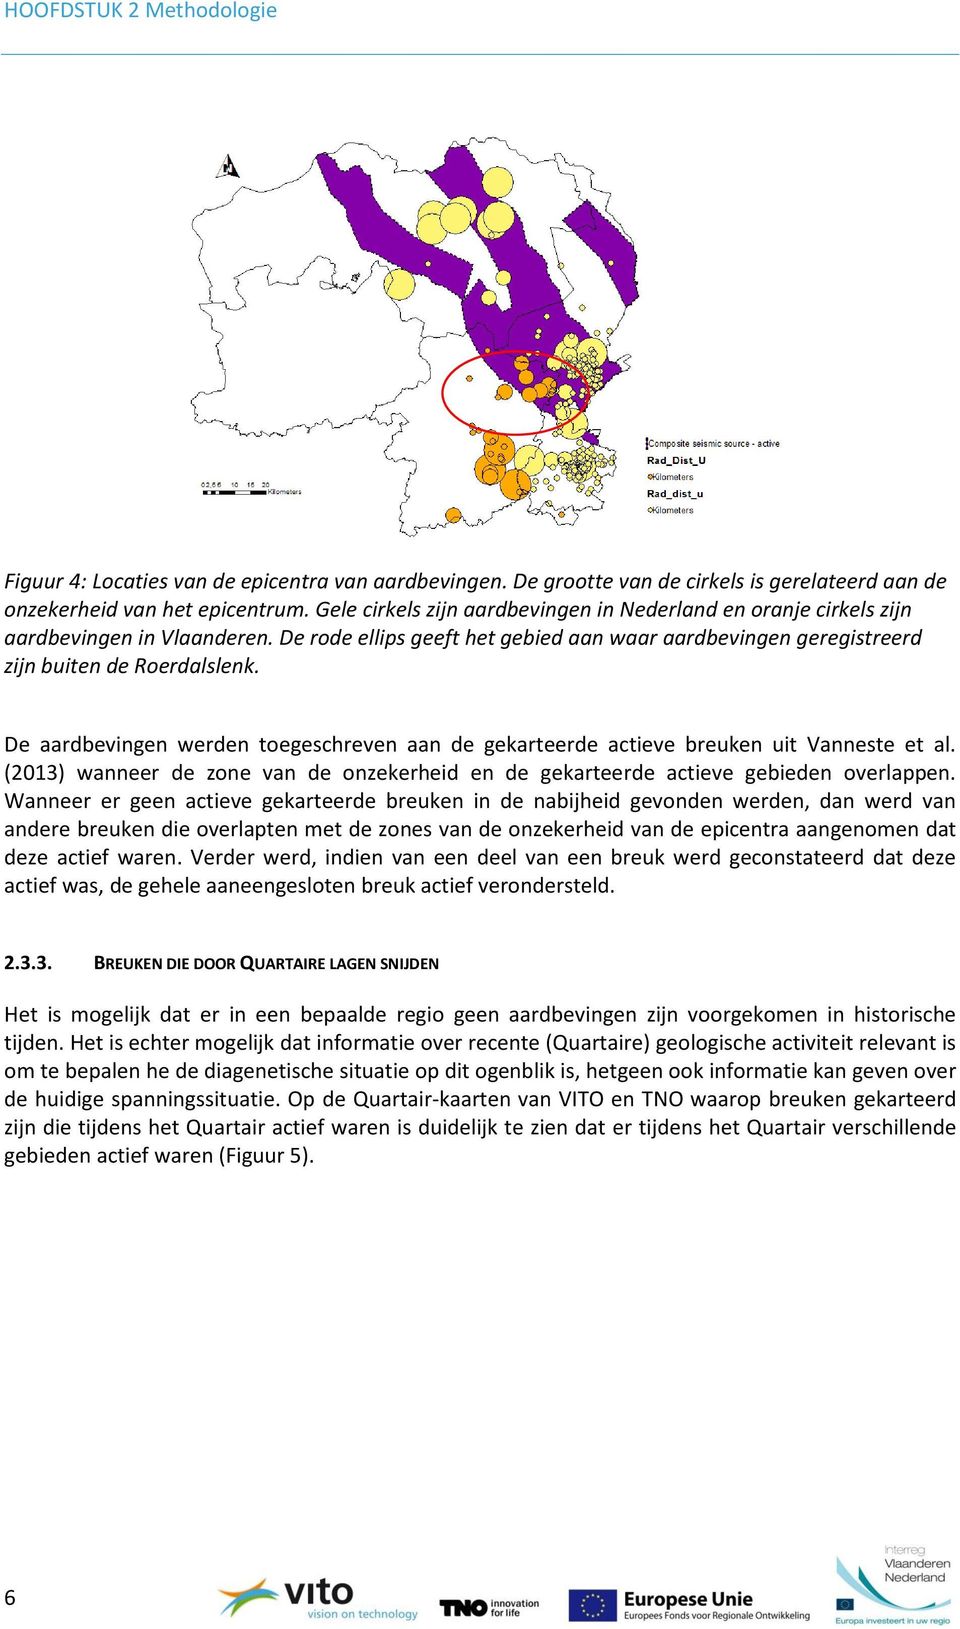 De aardbevingen werden toegeschreven aan de gekarteerde actieve breuken uit Vanneste et al. (2013) wanneer de zone van de onzekerheid en de gekarteerde actieve gebieden overlappen.